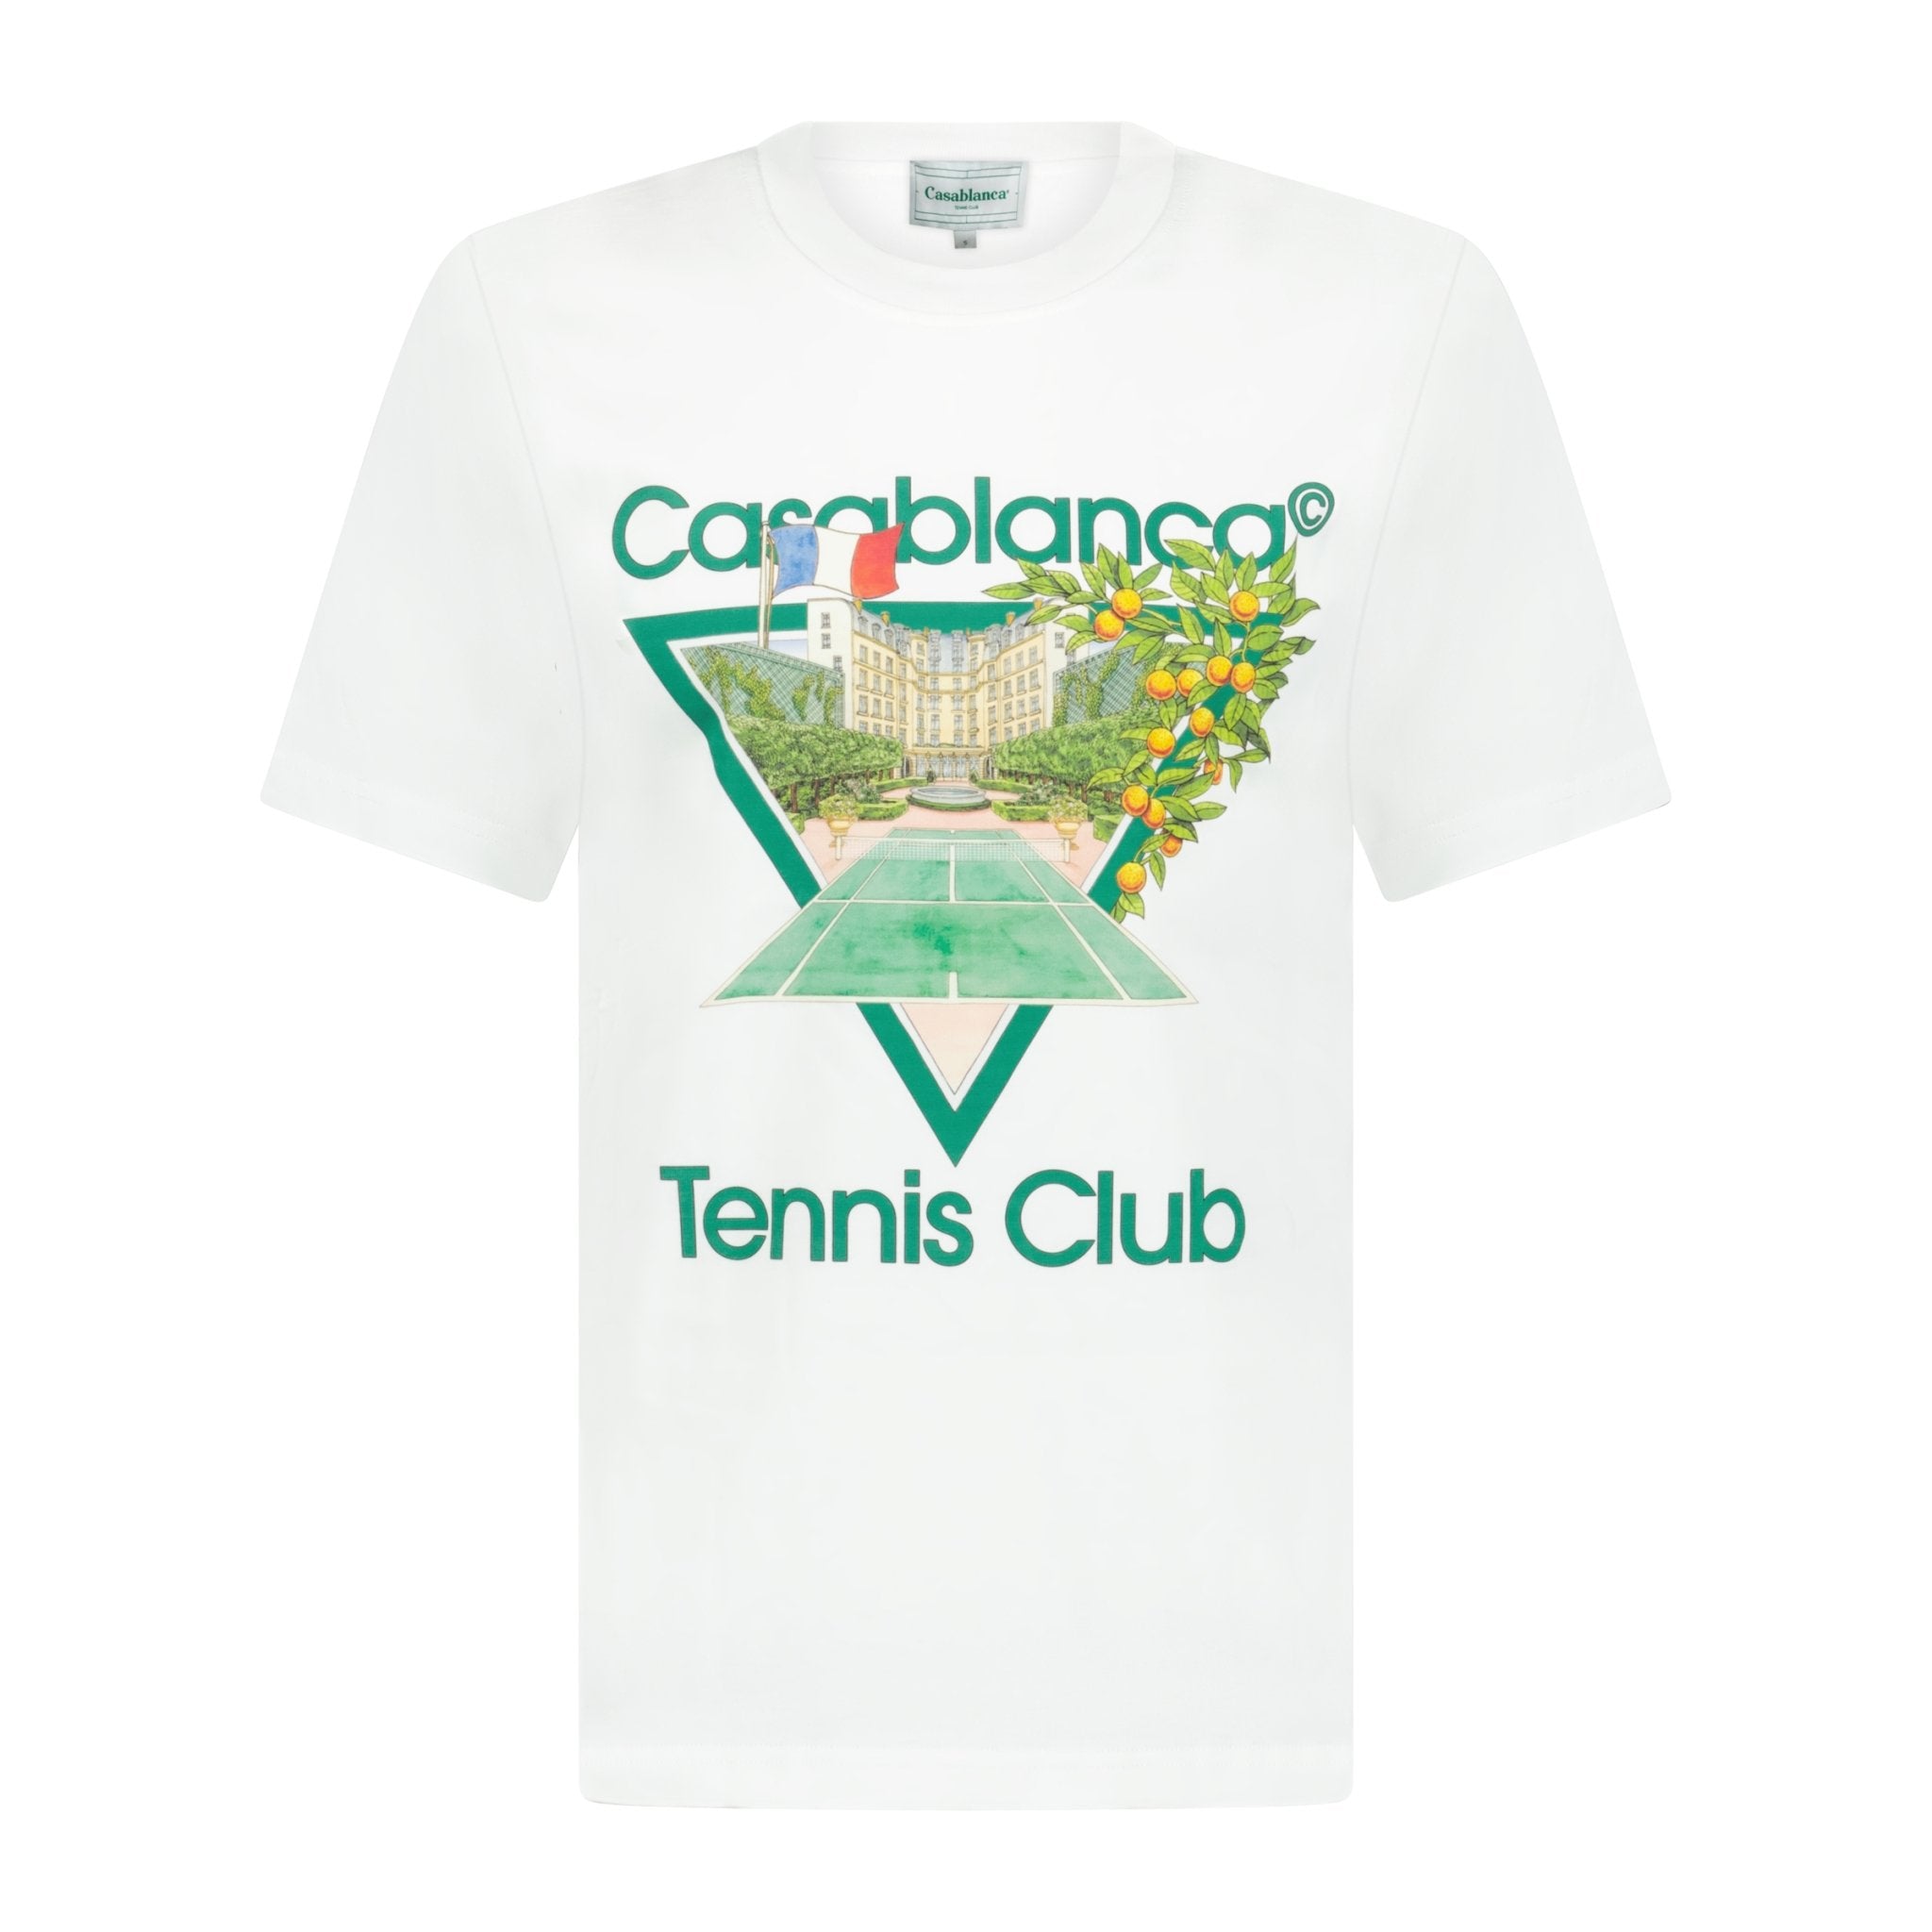 Casablanca 'Tennis Club' Graphic Print T-Shirt White